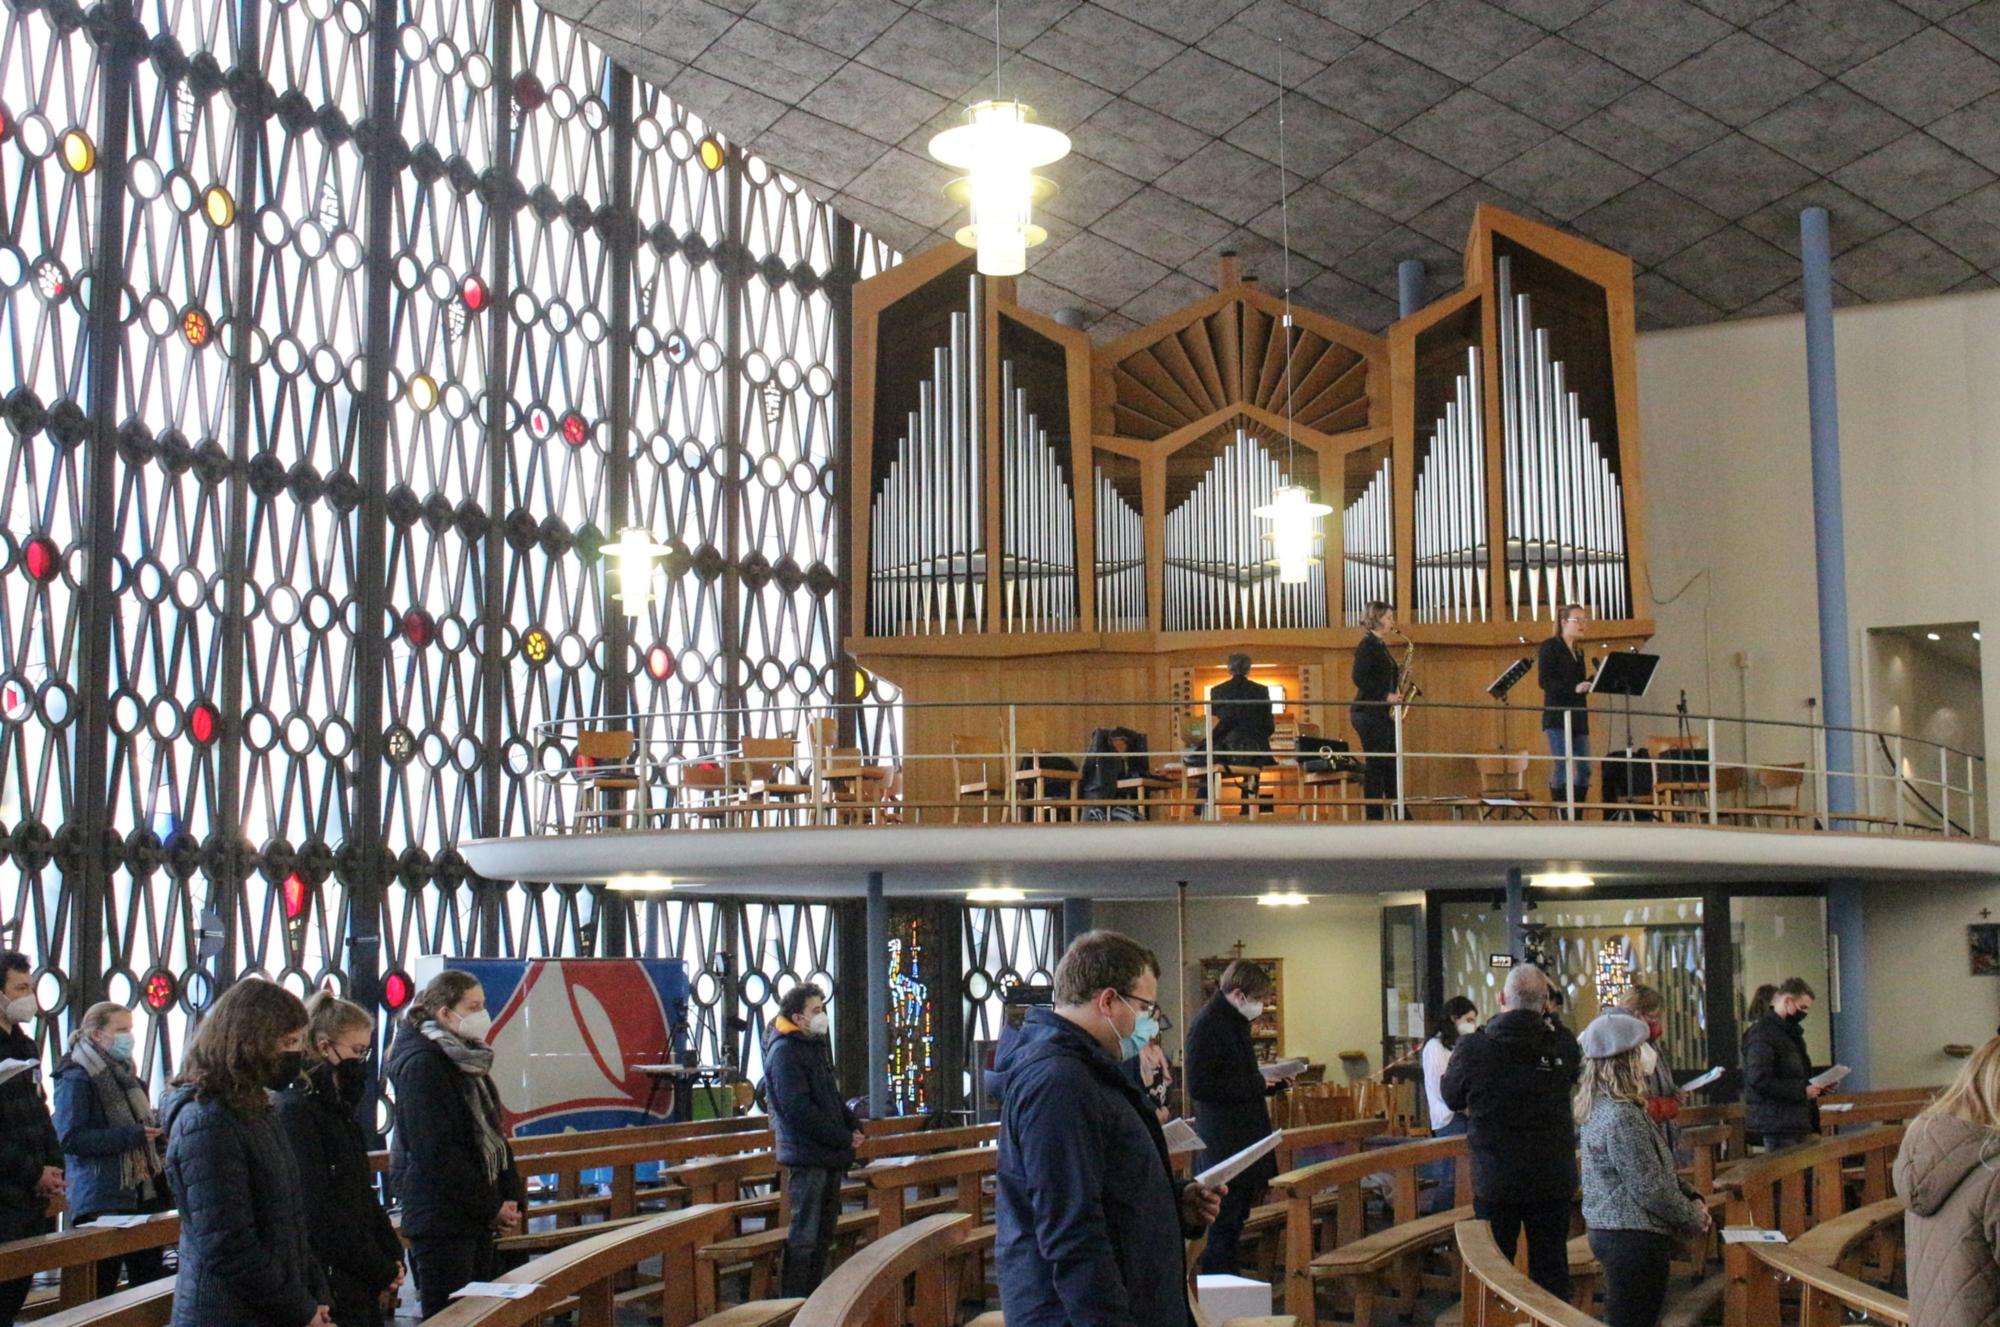 Mainz, 13. Februar 2022: Den Gottesdienst hatte der Darmstädter Regionalkantor Jorin Sandau (Orgel) zusammen mit Kerstin Haberecht (Saxophon) und Caro Trischler (Gesang) gestaltet. (c) Bistum Mainz / Blum